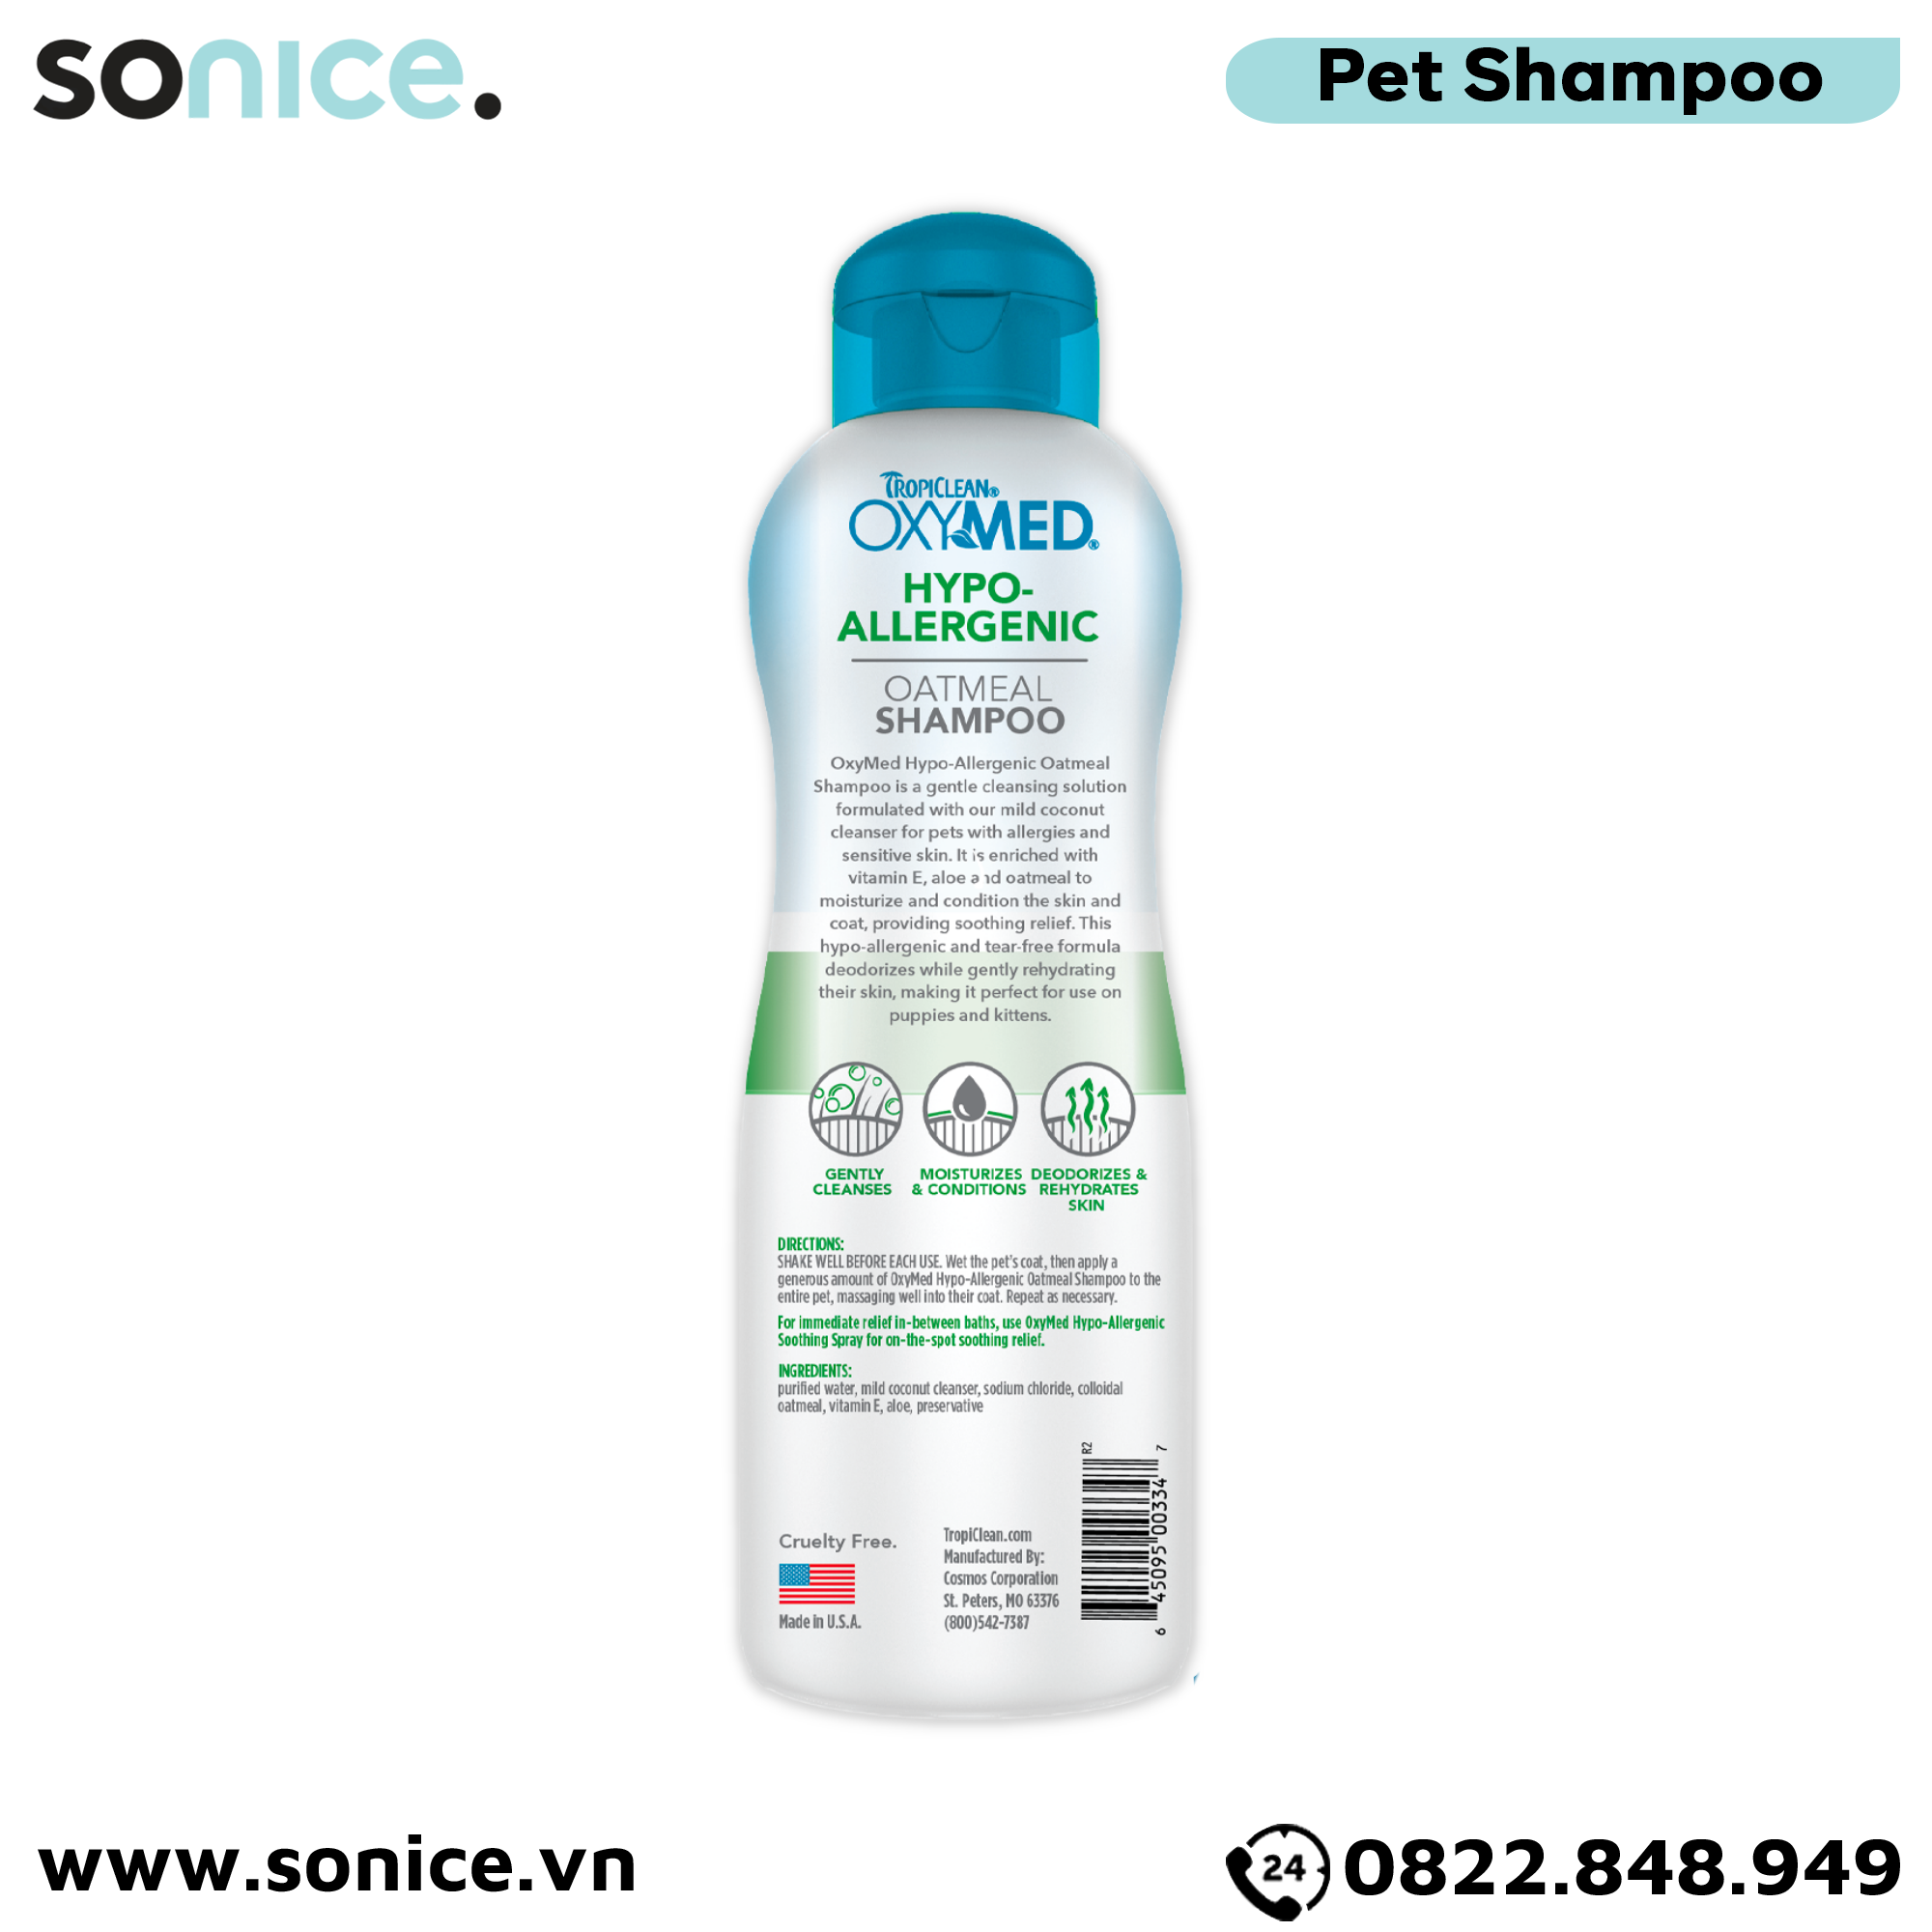  Sữa tắm TropiClean OXYMED Hypo-Allergenic 592ml - Dành cho chó mèo da nhạy cảm, hỗ trợ dị ứng SONICE. 